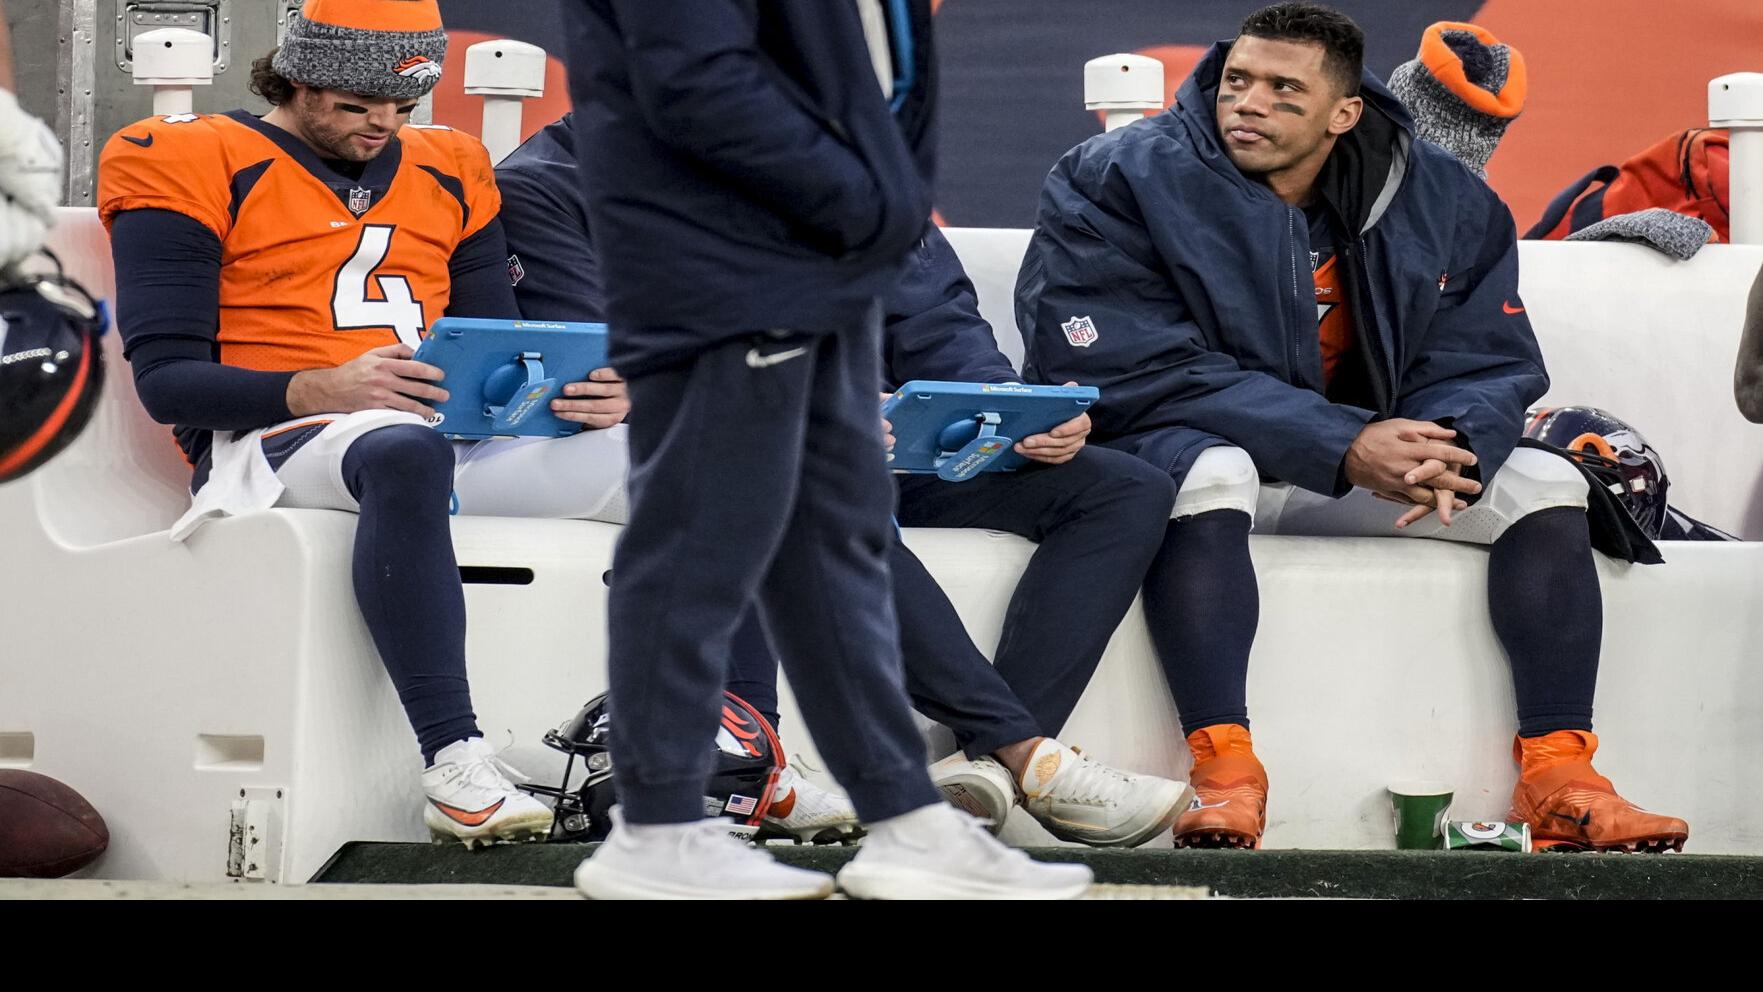 Wil Lutz to wear No. 3 for Broncos after Wilson's release | Denver Broncos | denvergazette.com